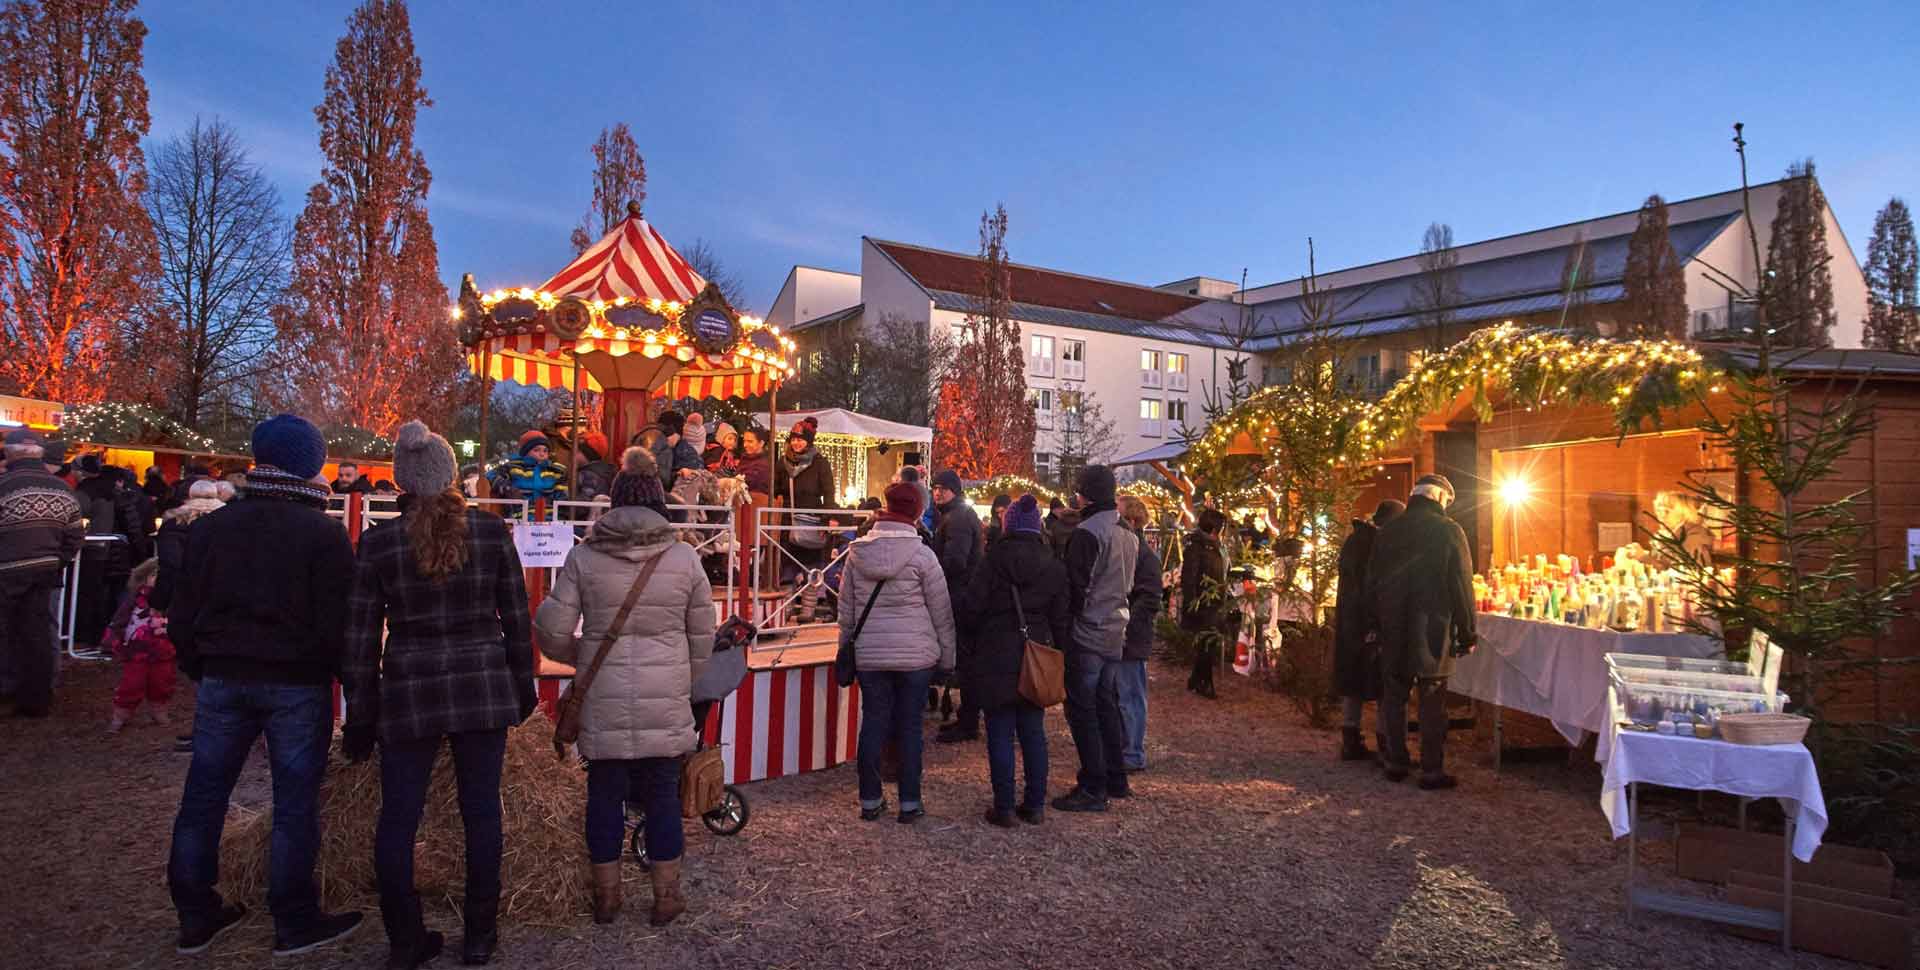 Auf dem Adventsmarkt in Bad Gögging lässt es sich mit würzigem Glühwein, dem süßen Duft von Plätzchen und weihnachtlicher Atmosphäre auf das Fest einstimmen. (Foto: Mayer)